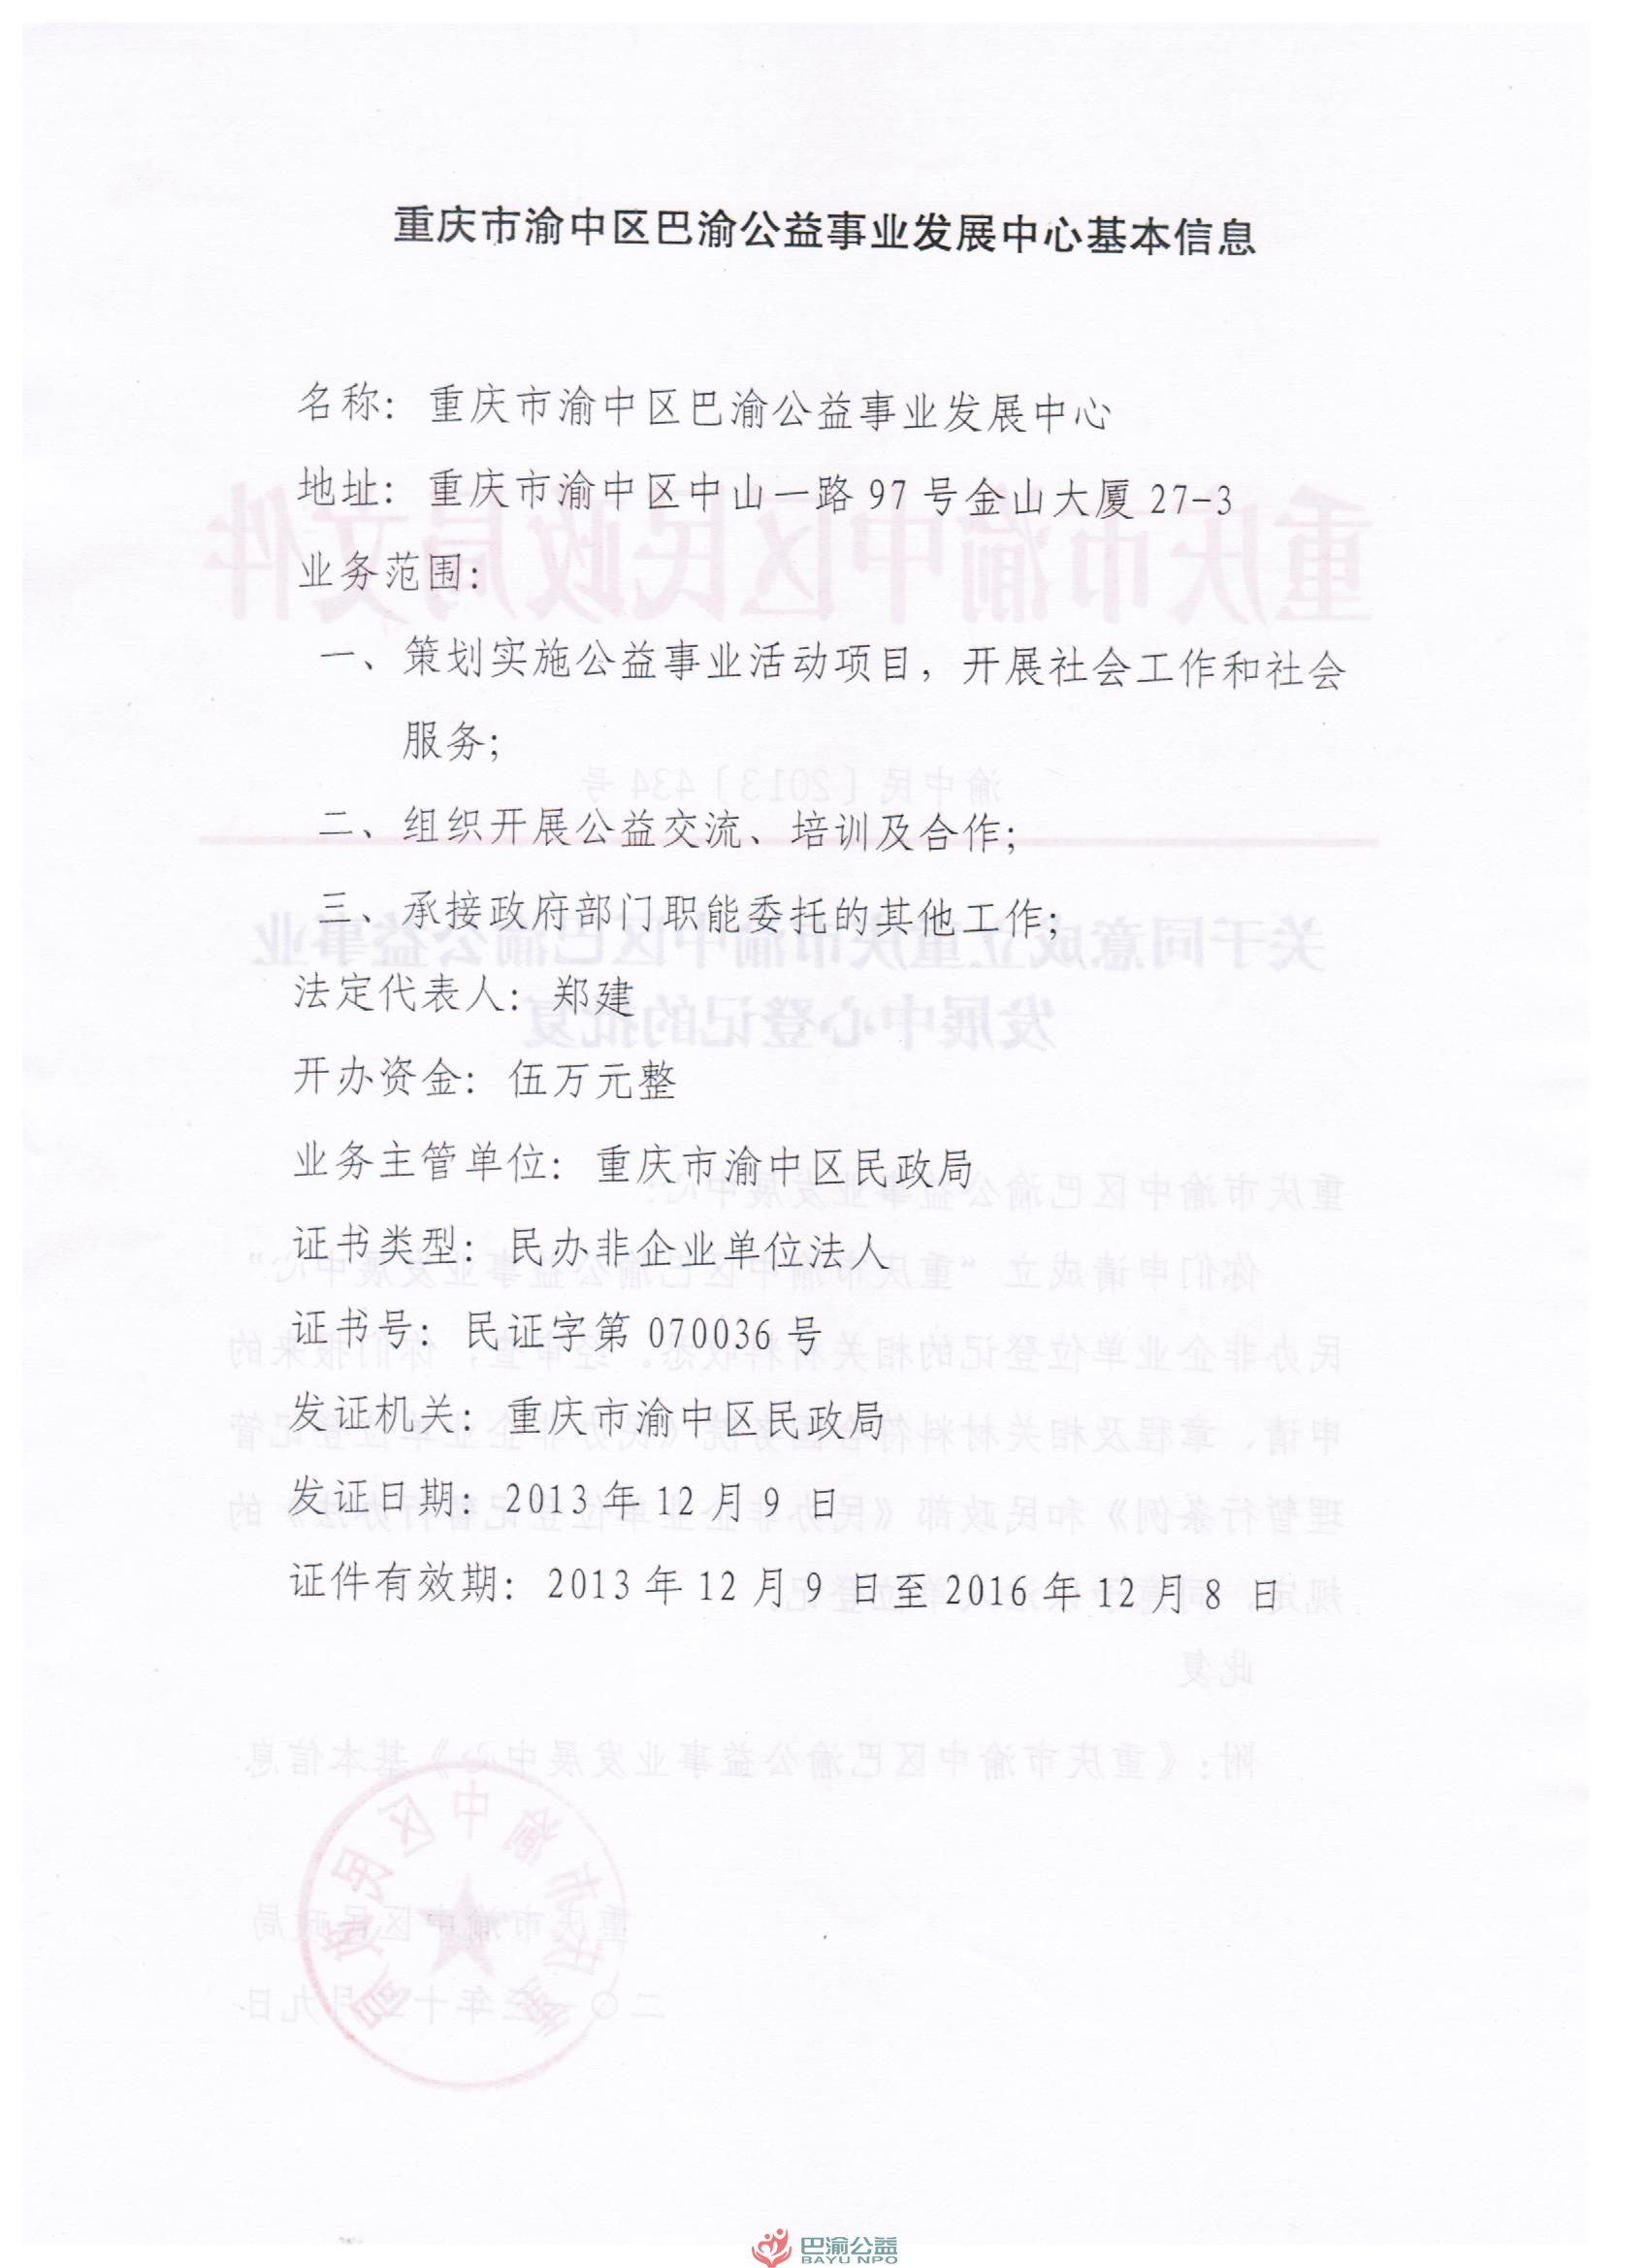 重庆青年环境交流中心注册为重庆市渝中区巴渝公益事业发展中心